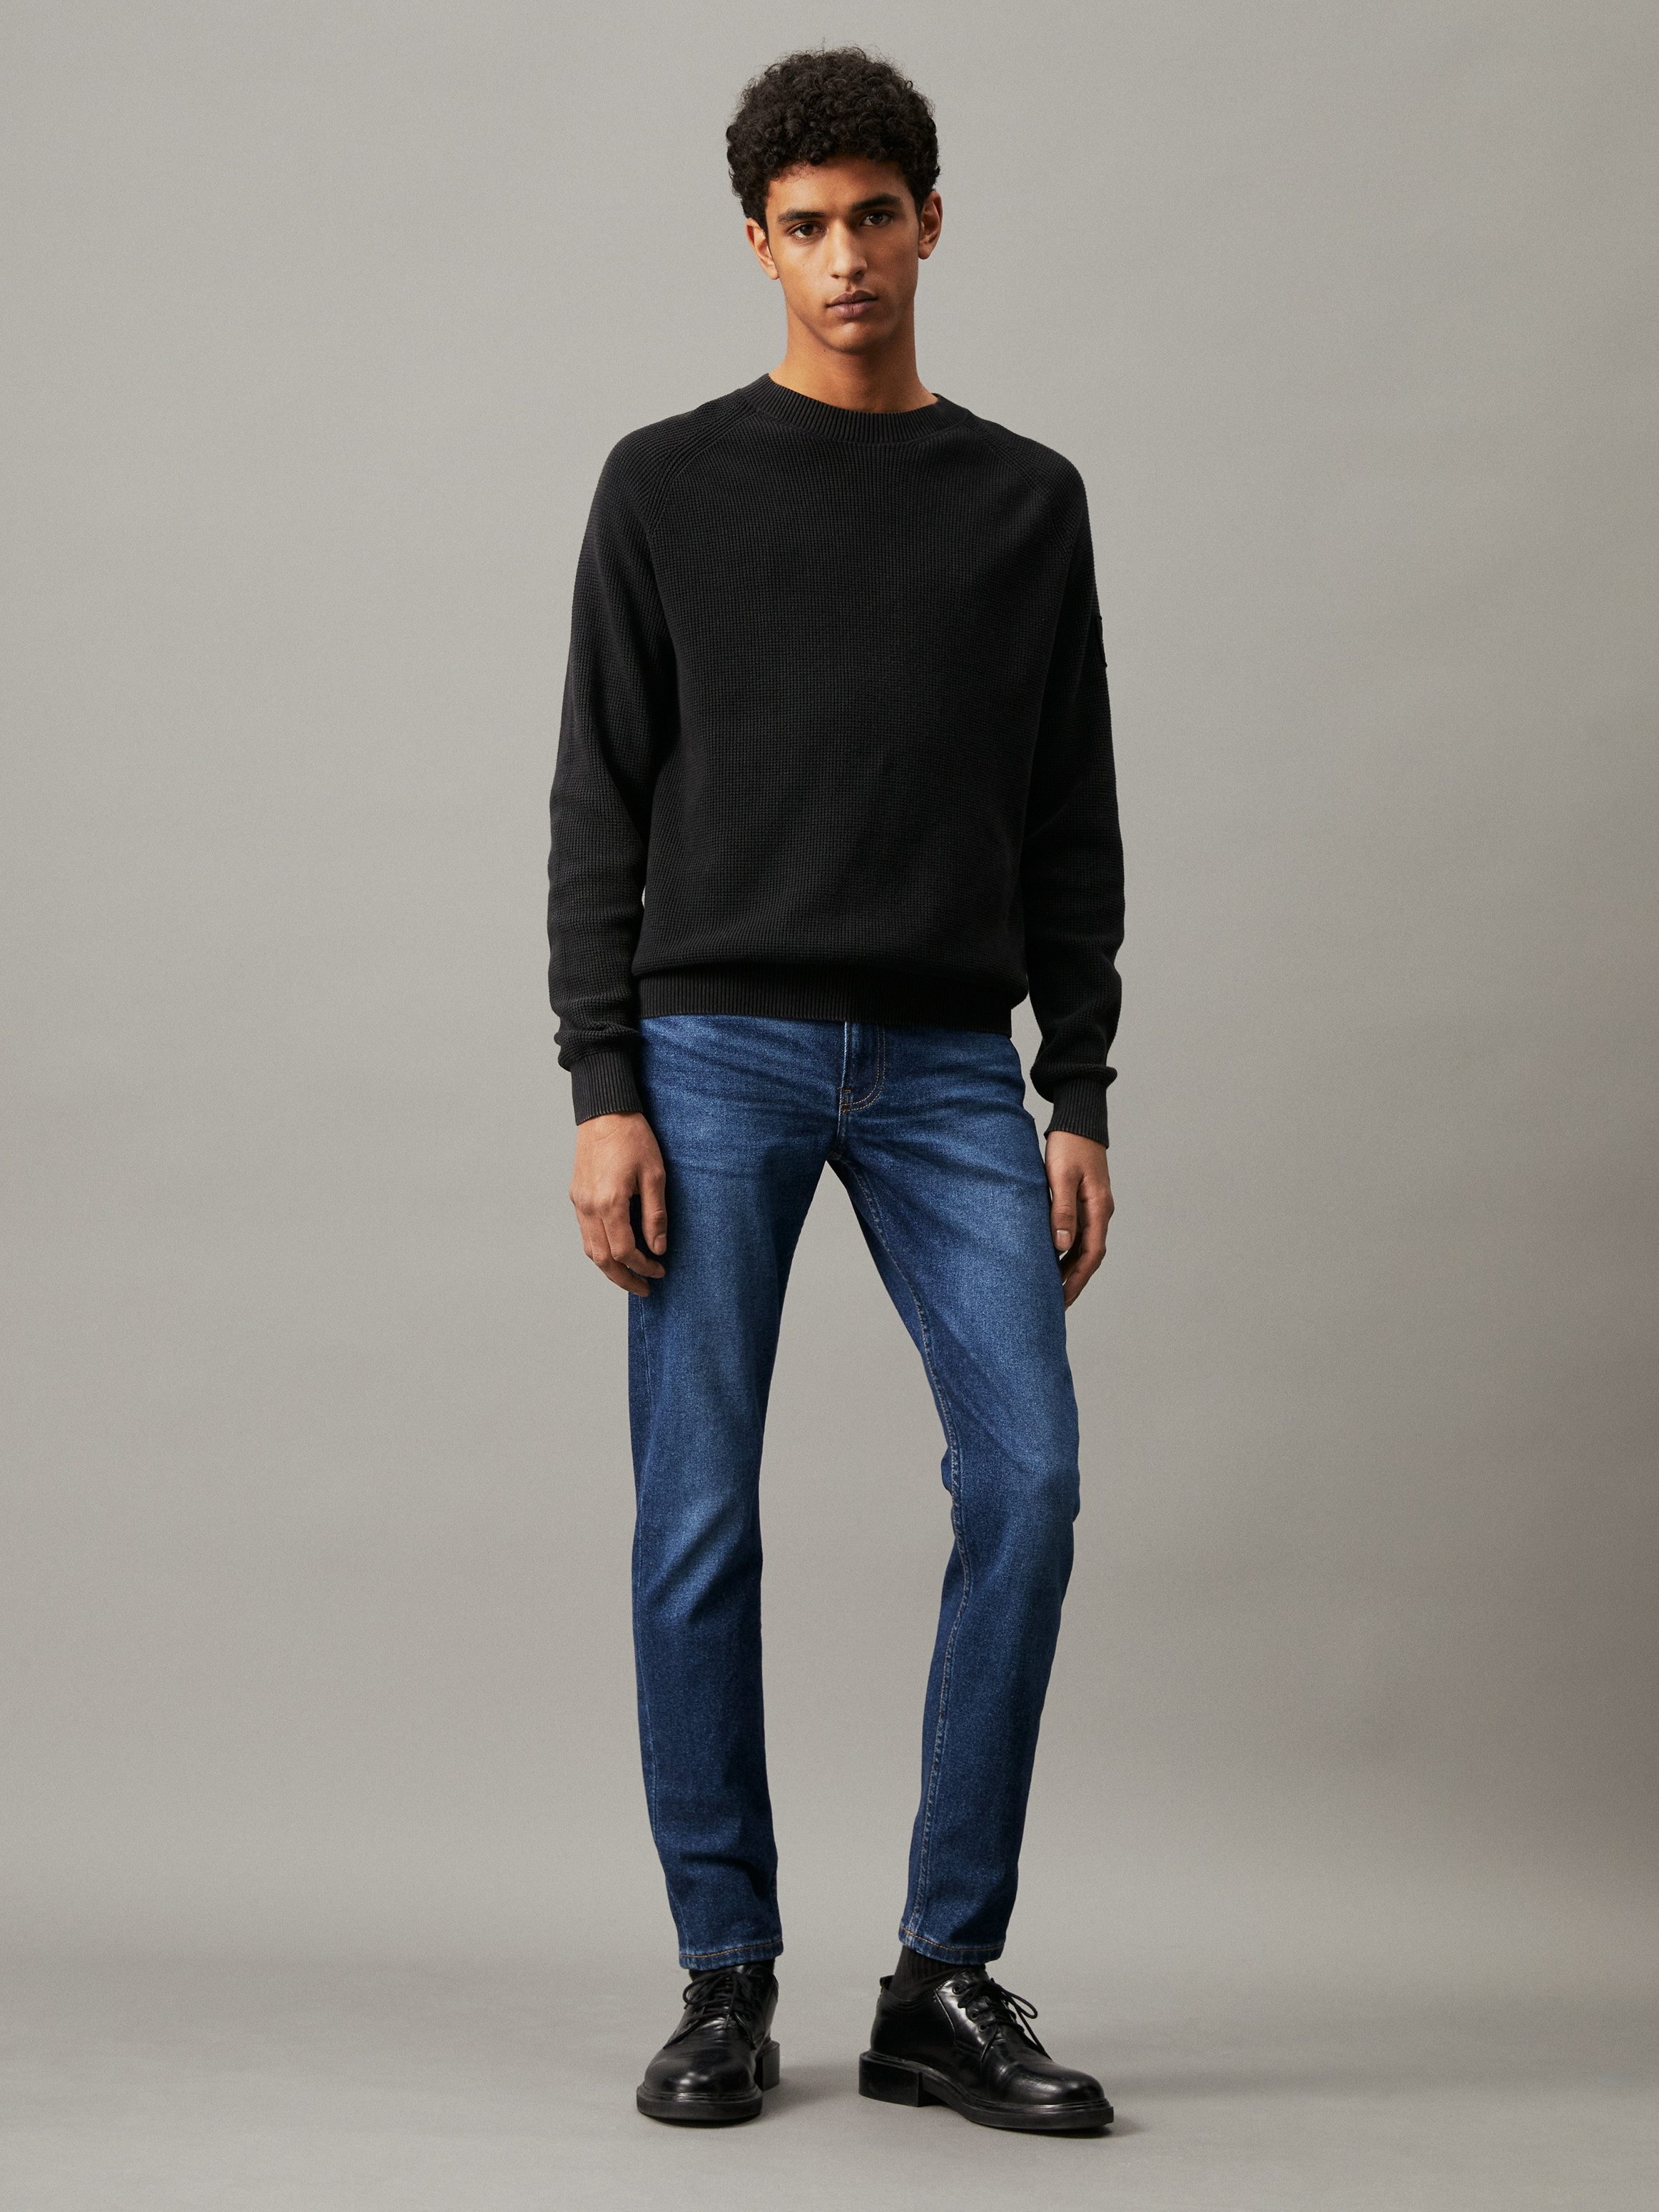 Calvin Klein Slim fit jeans SLIM TAPER in een klassiek 5-pocketsmodel